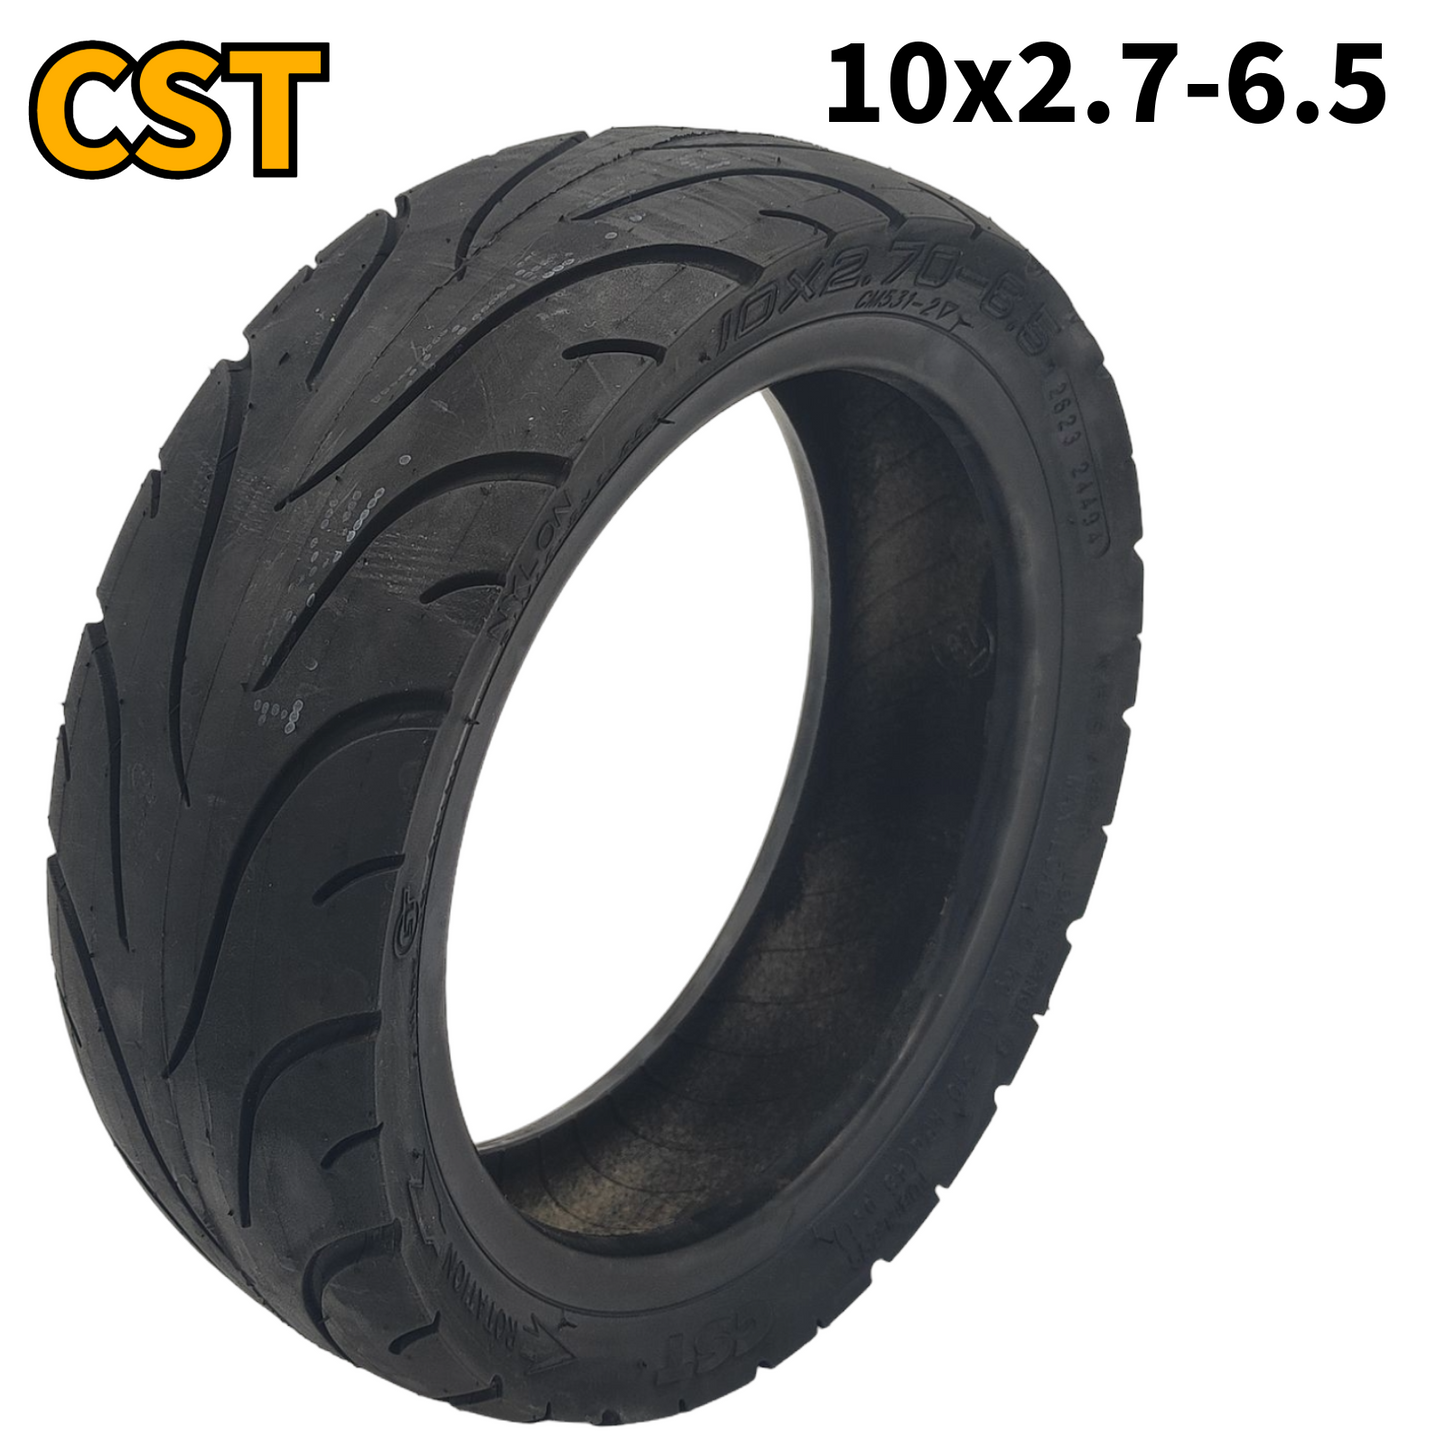 CST dæk 10x2,7-6,5 slangeløst uden gellag med ventil